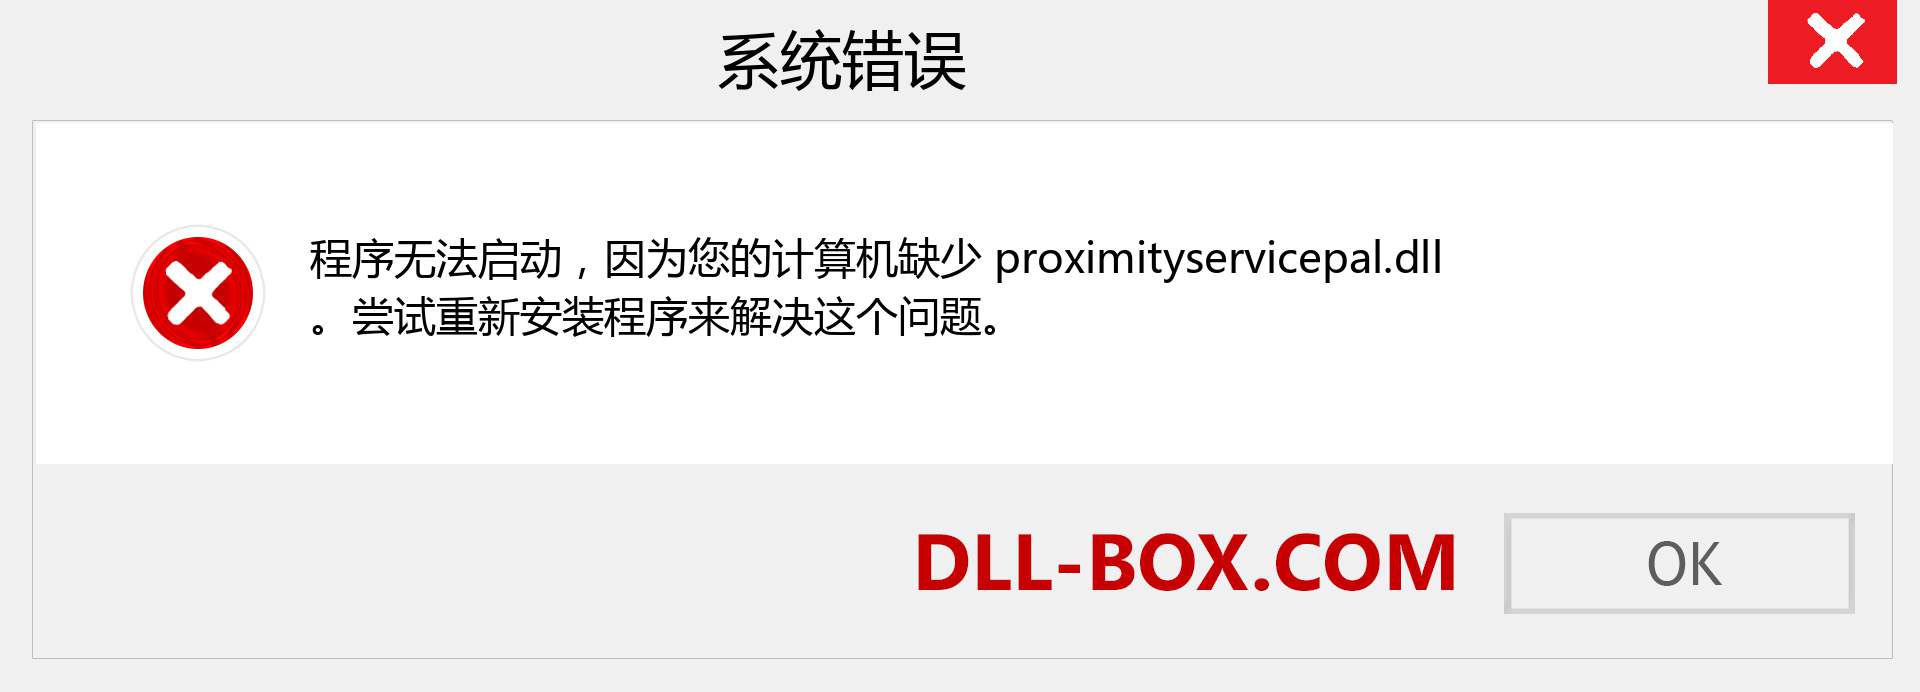 proximityservicepal.dll 文件丢失？。 适用于 Windows 7、8、10 的下载 - 修复 Windows、照片、图像上的 proximityservicepal dll 丢失错误